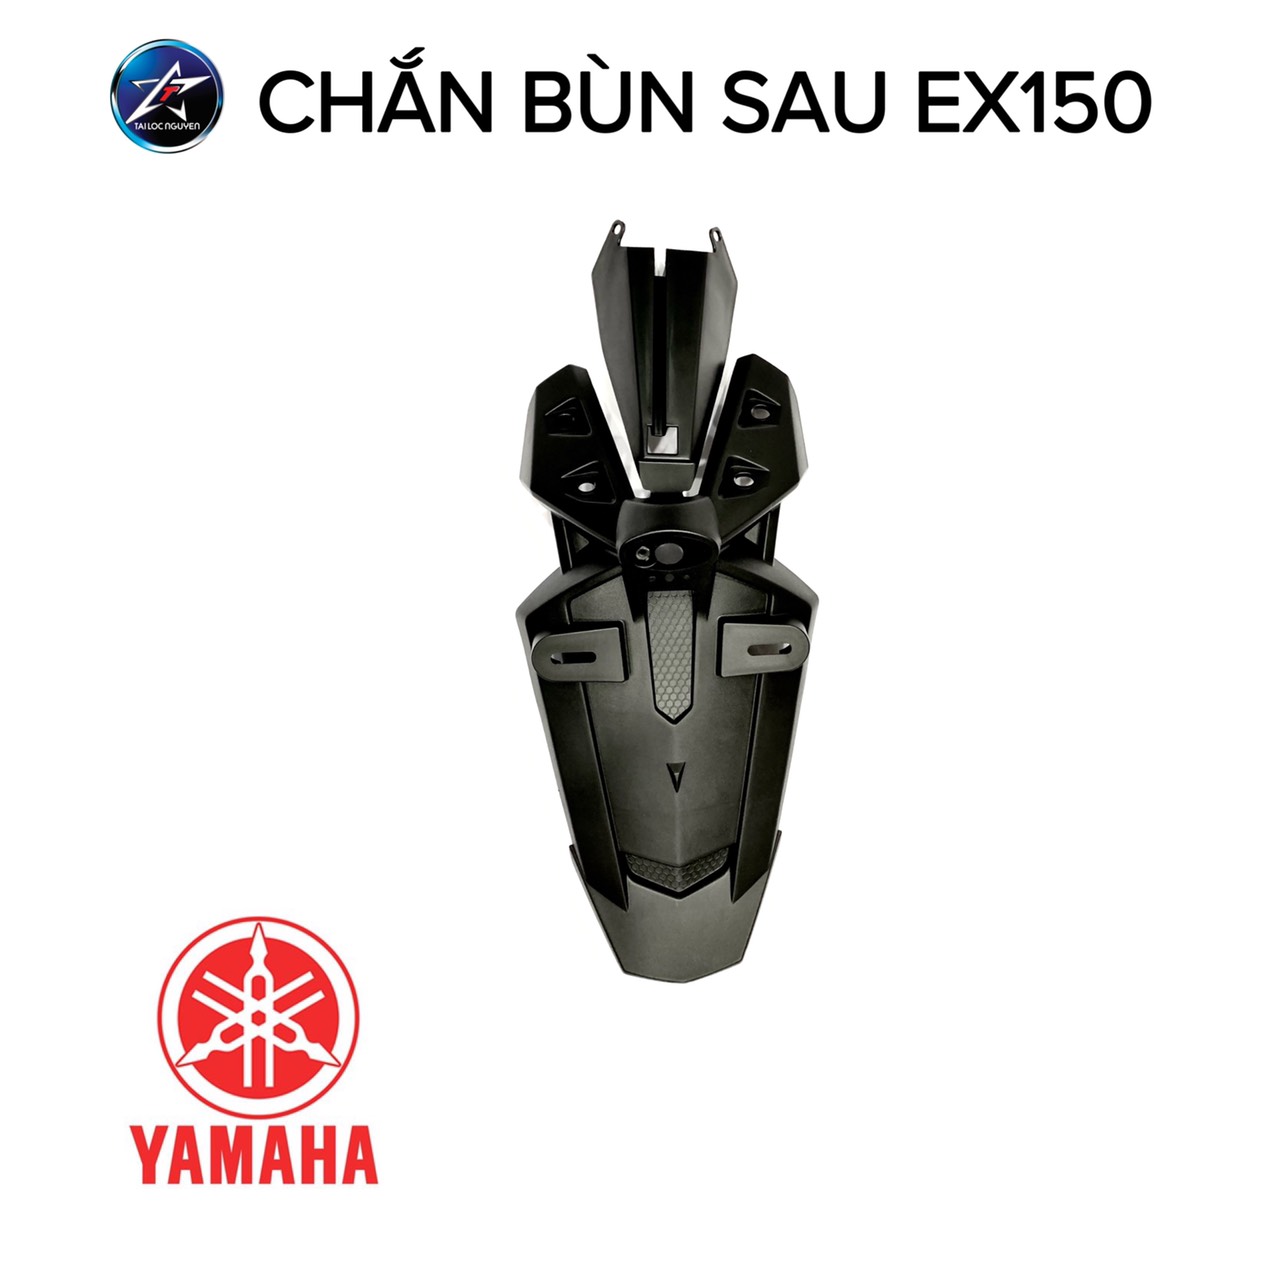 Yamaha Exciter 150 sơn dọn theo style dàn áo đen bóng kết hợp nhựa nhám sơn  đỏ cực đẹp  YouTube